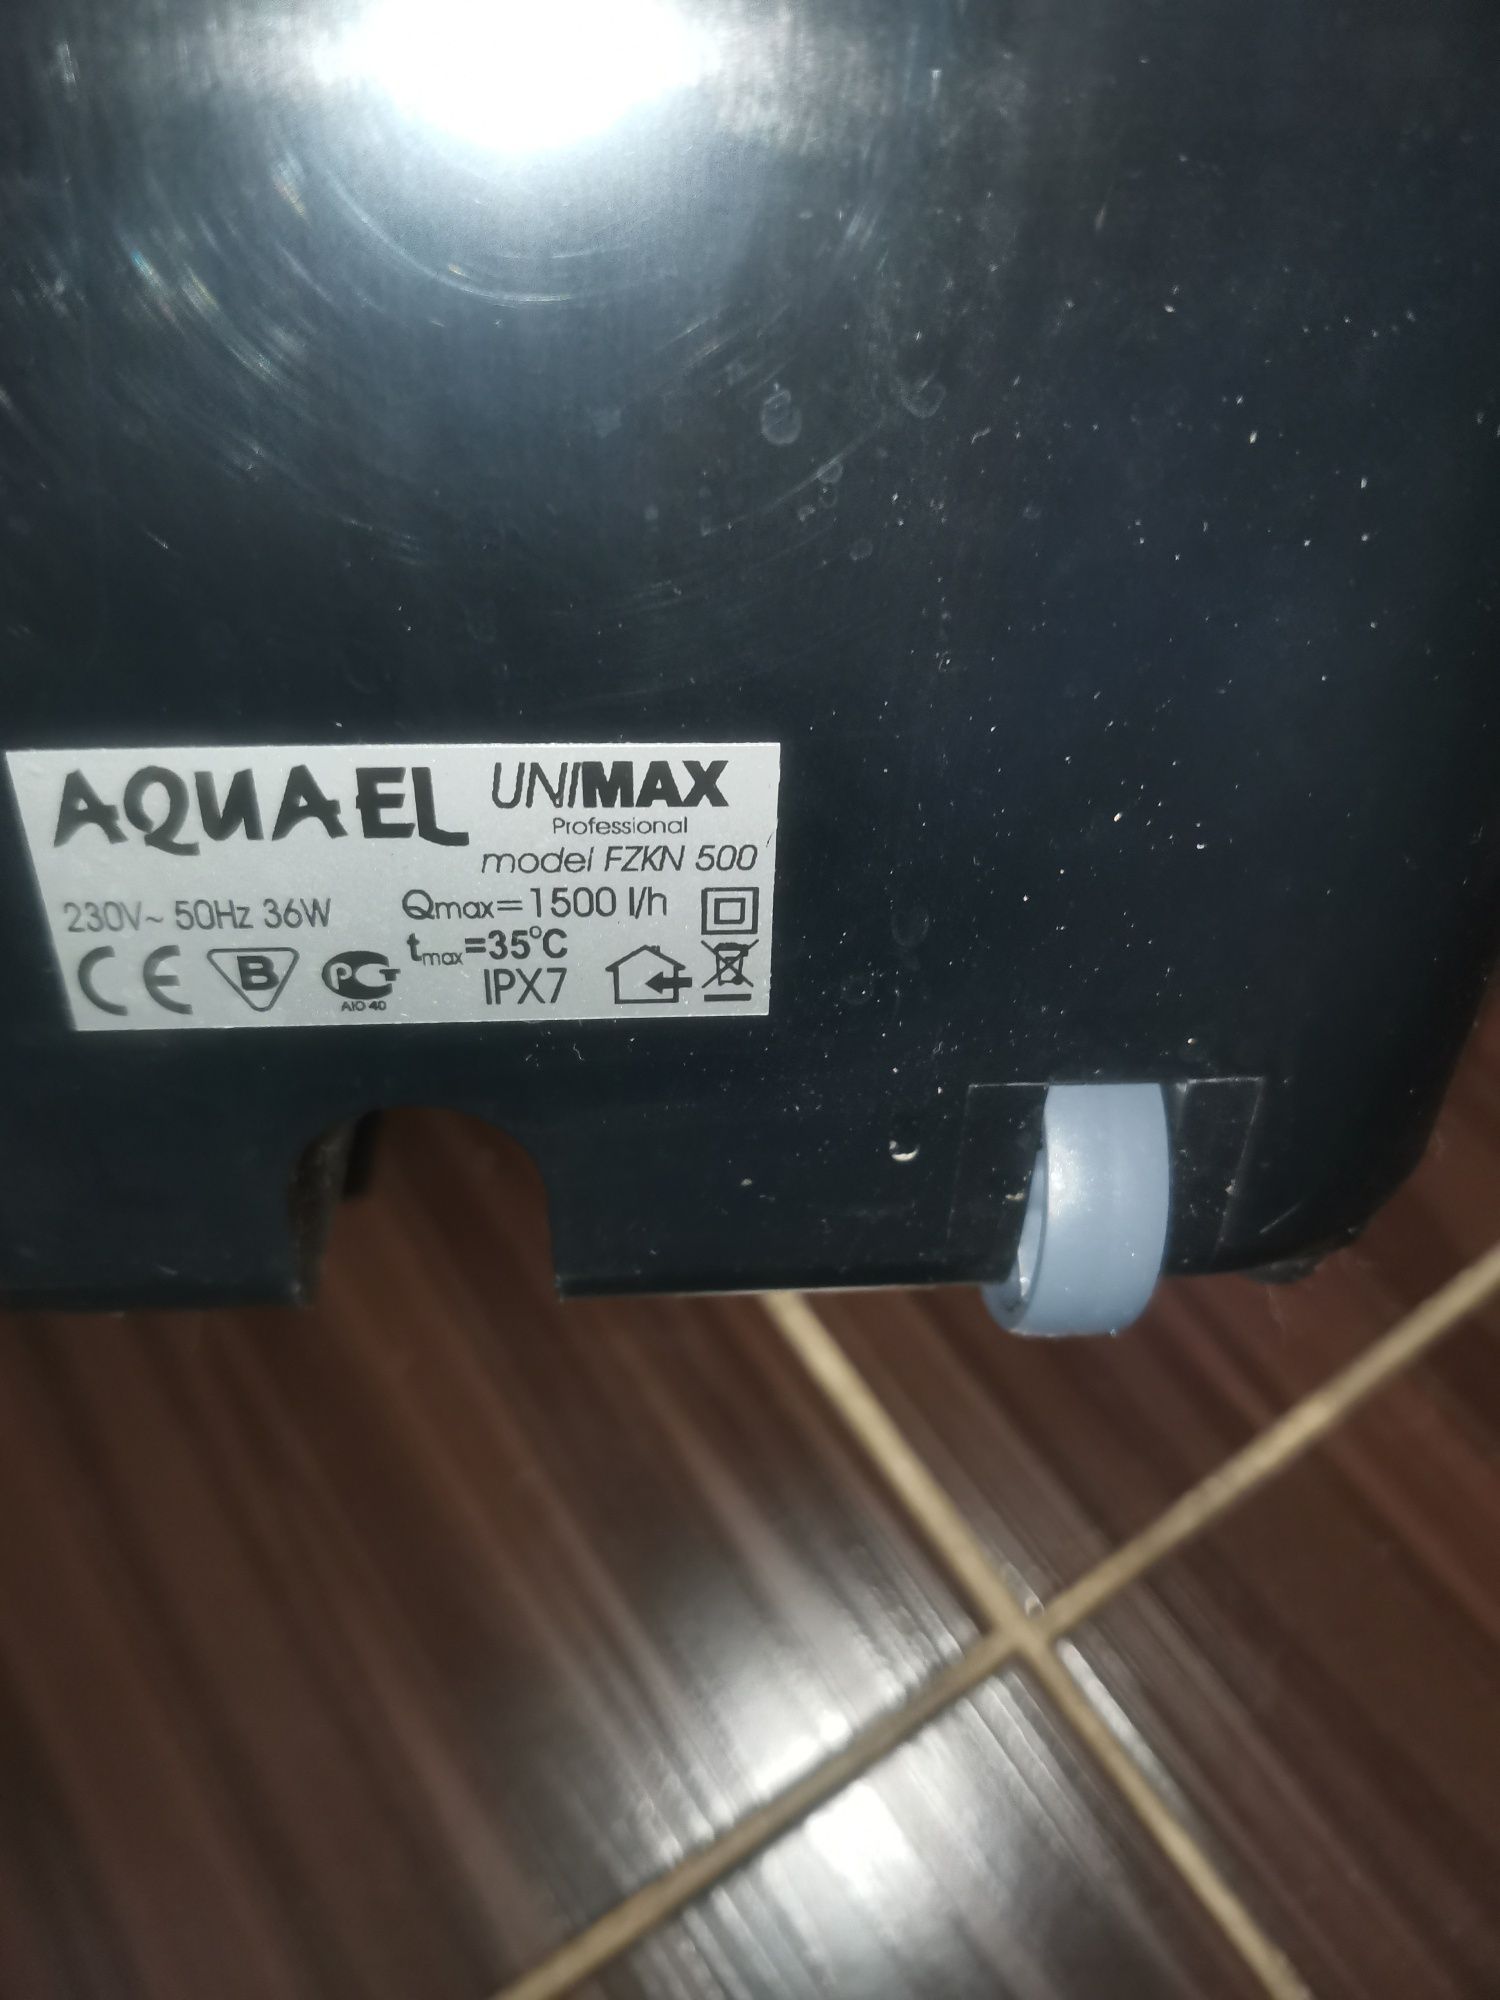 Filtr aquael unimax 500